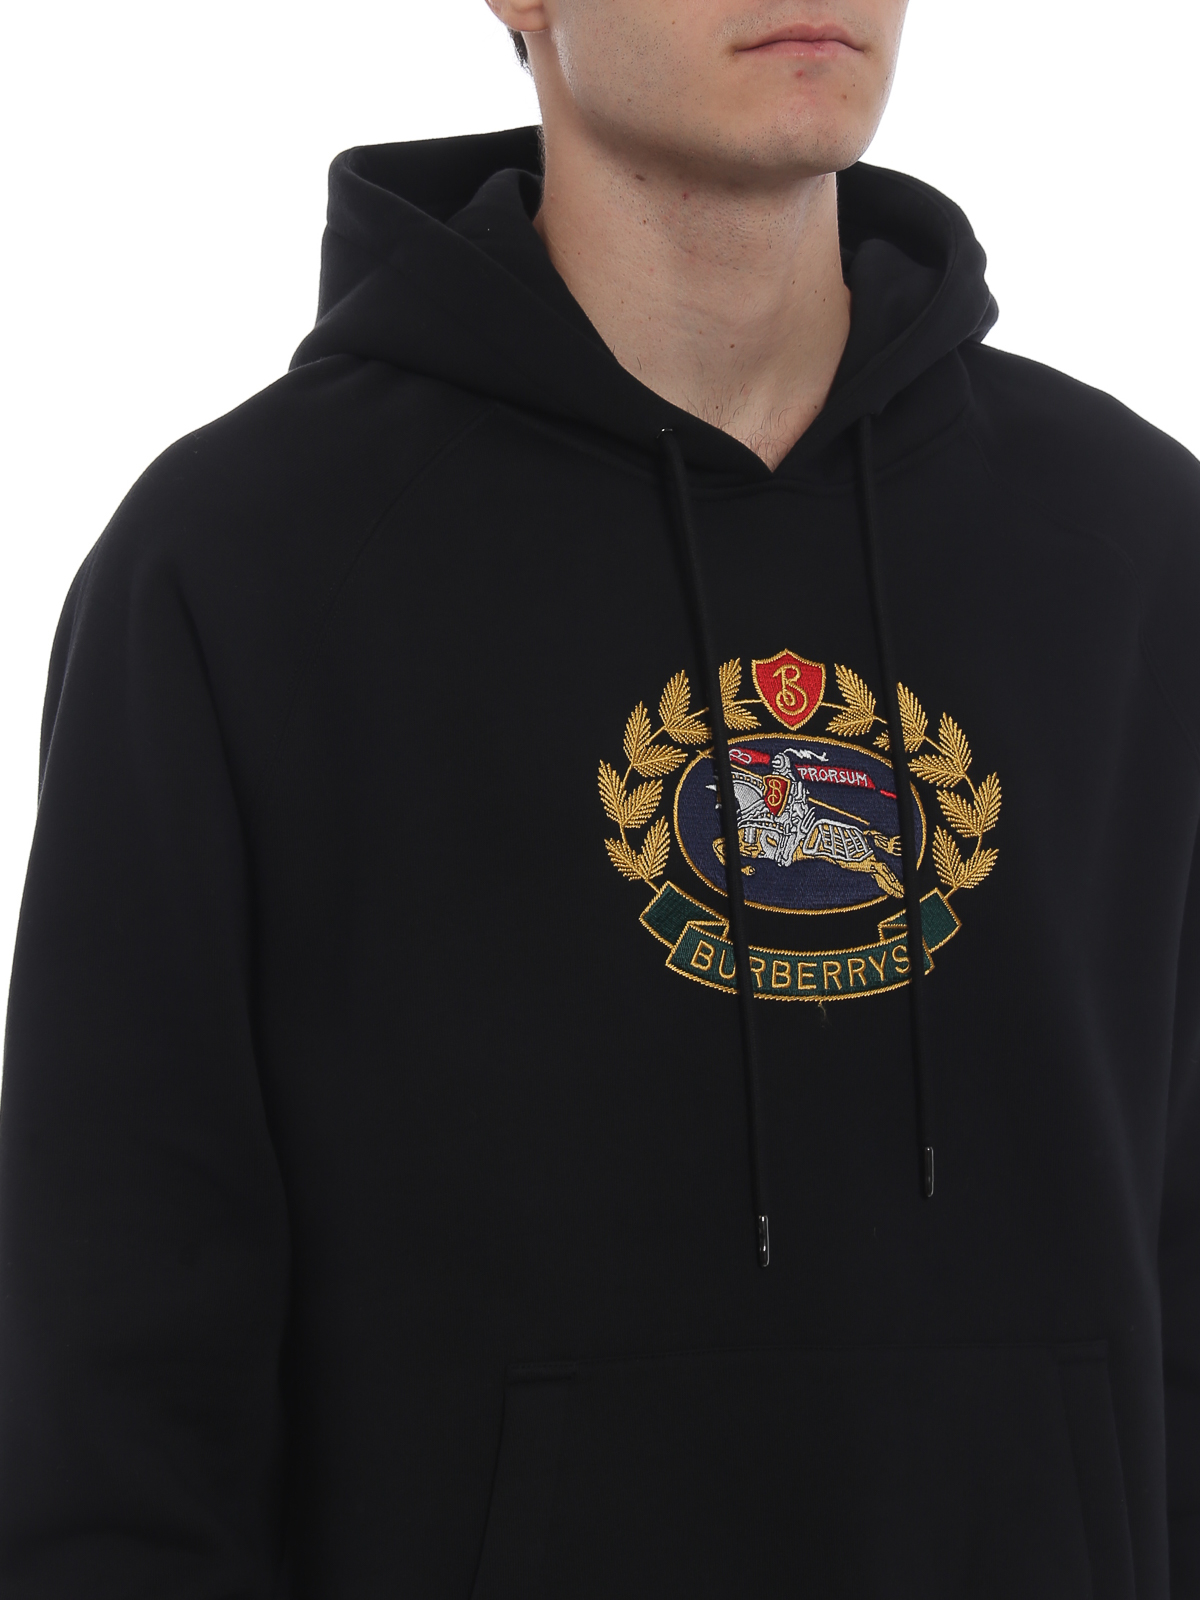 burberry hoodie mens 2013